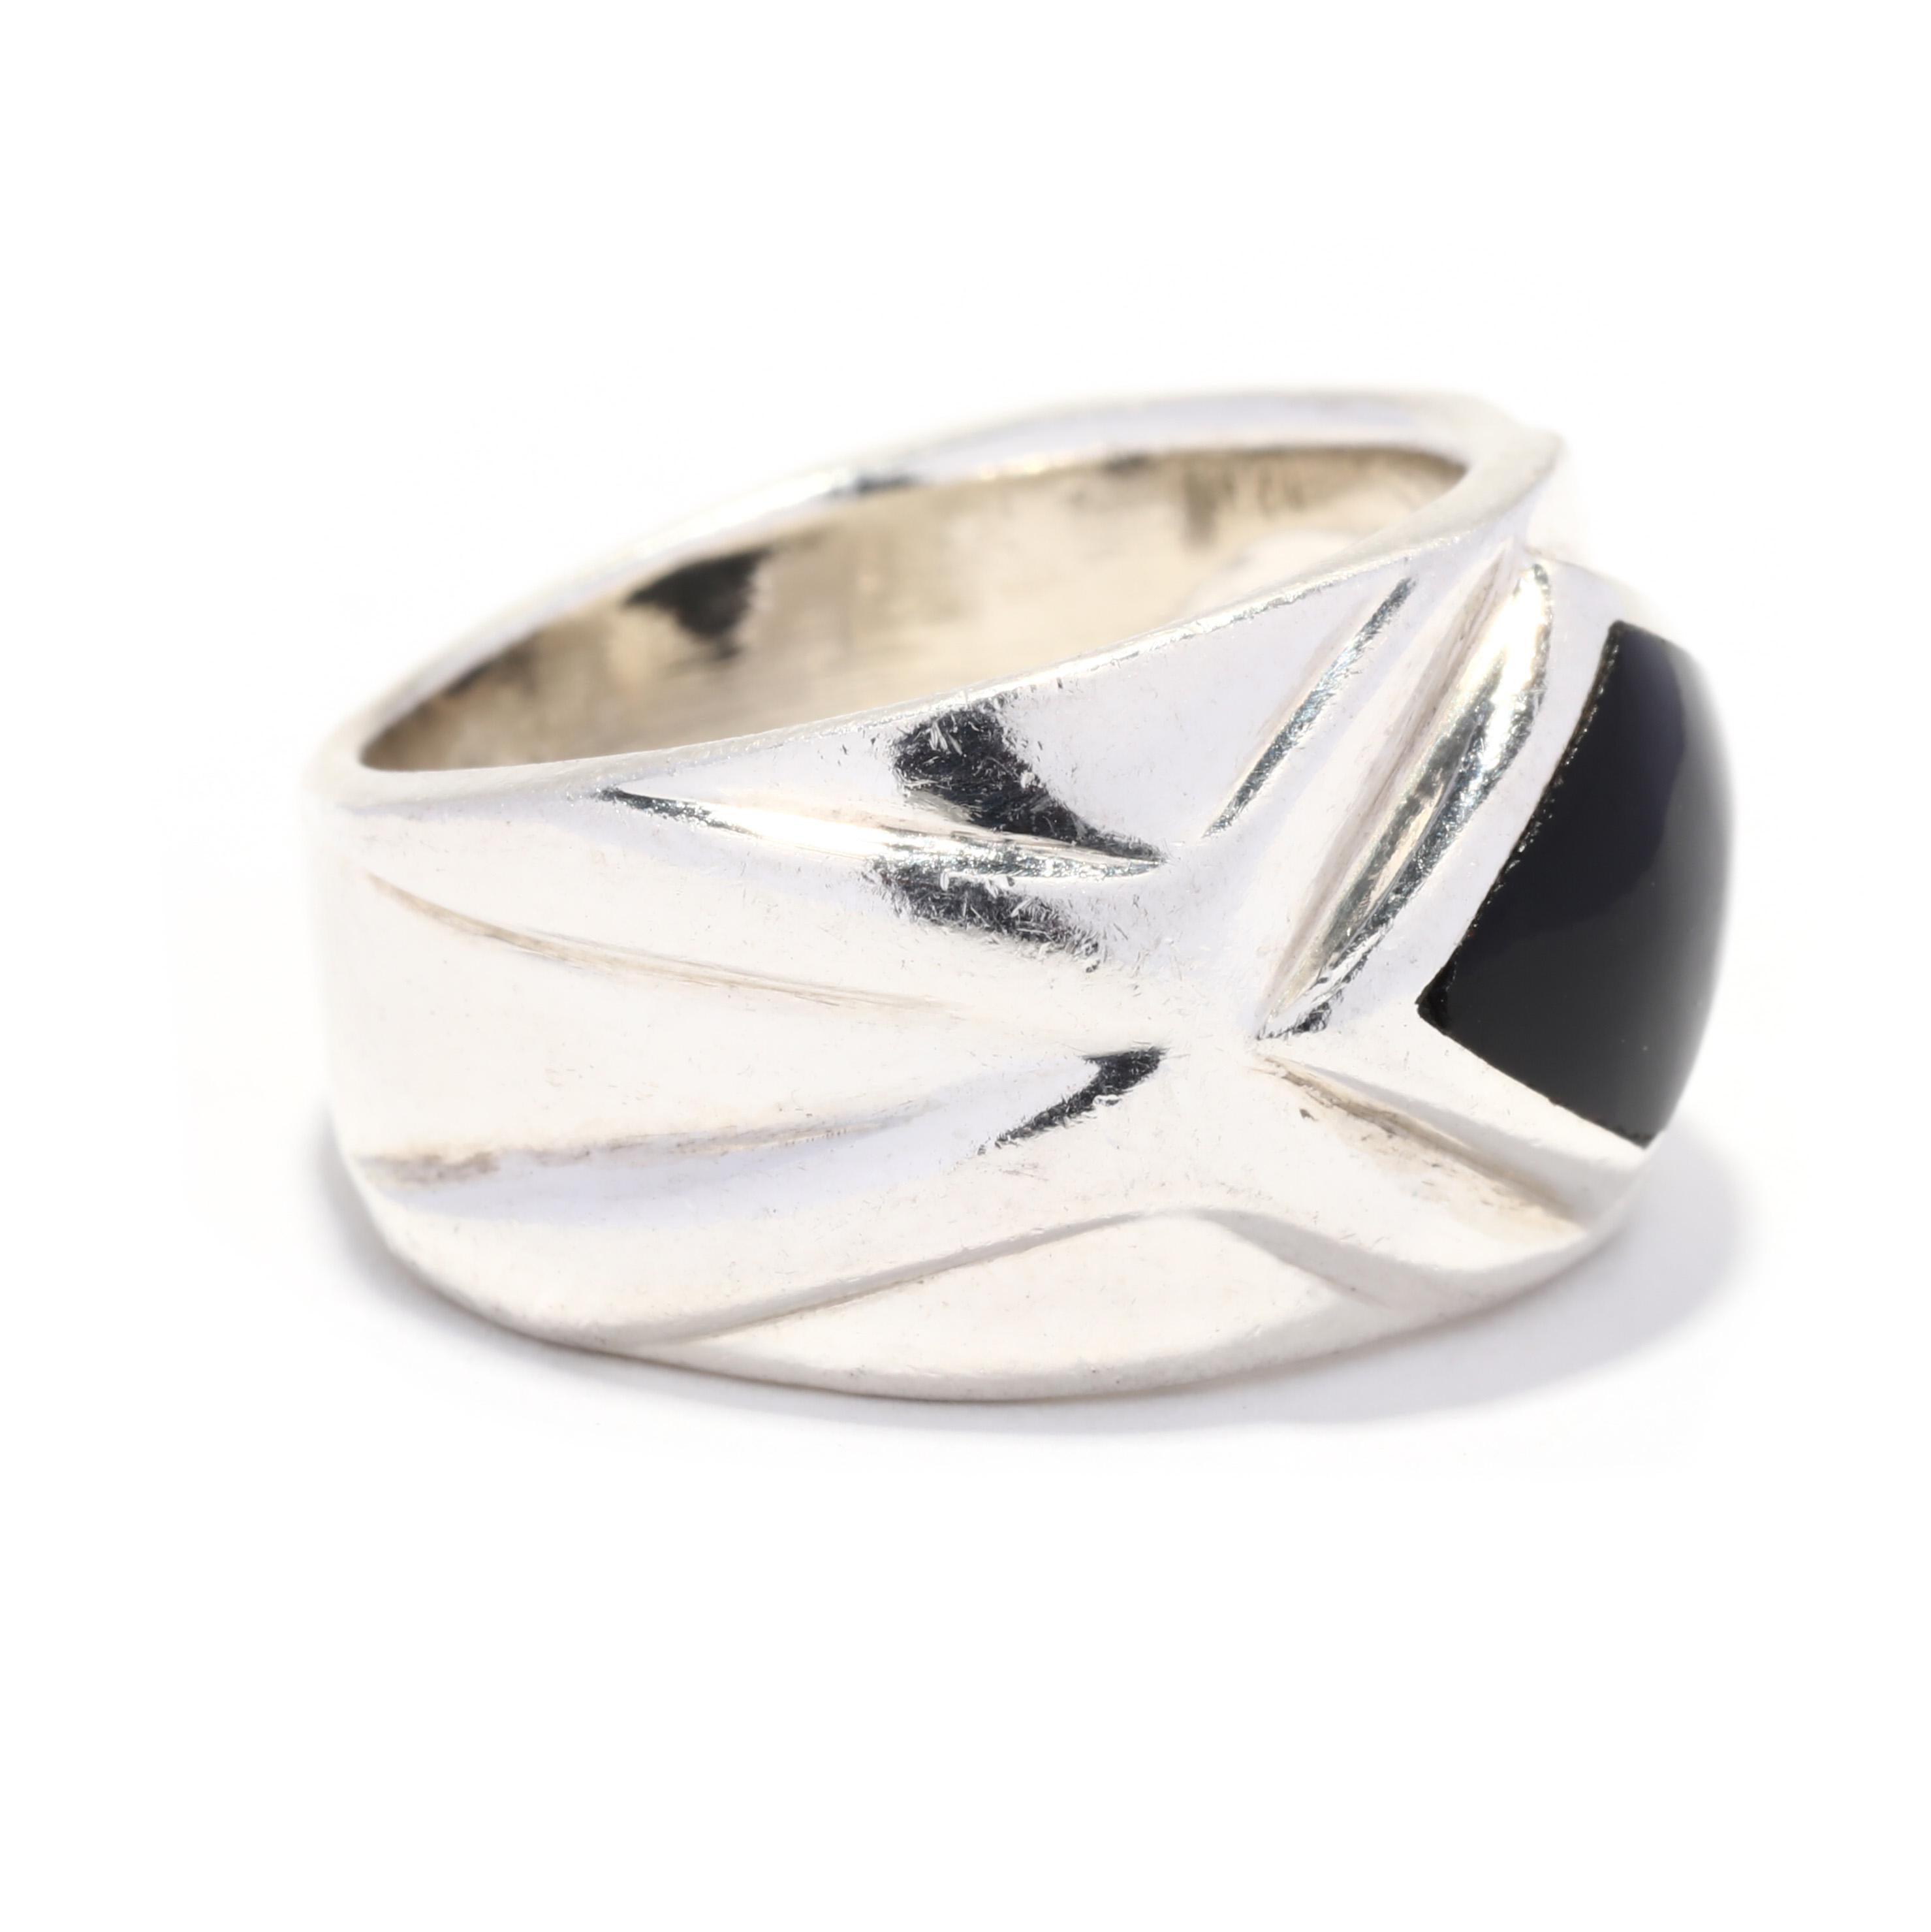 Ein Vintage Sterling Silber schwarz Onyx Navette Band Ring. Dieser silberne Navette-Ring hat ein breites Band mit einer asymmetrischen, marquiseförmigen schwarzen Onyx-Tafel und einem geometrischen Detailband.

Steine: 
- schwarzer Onyx, 1 Stein
-